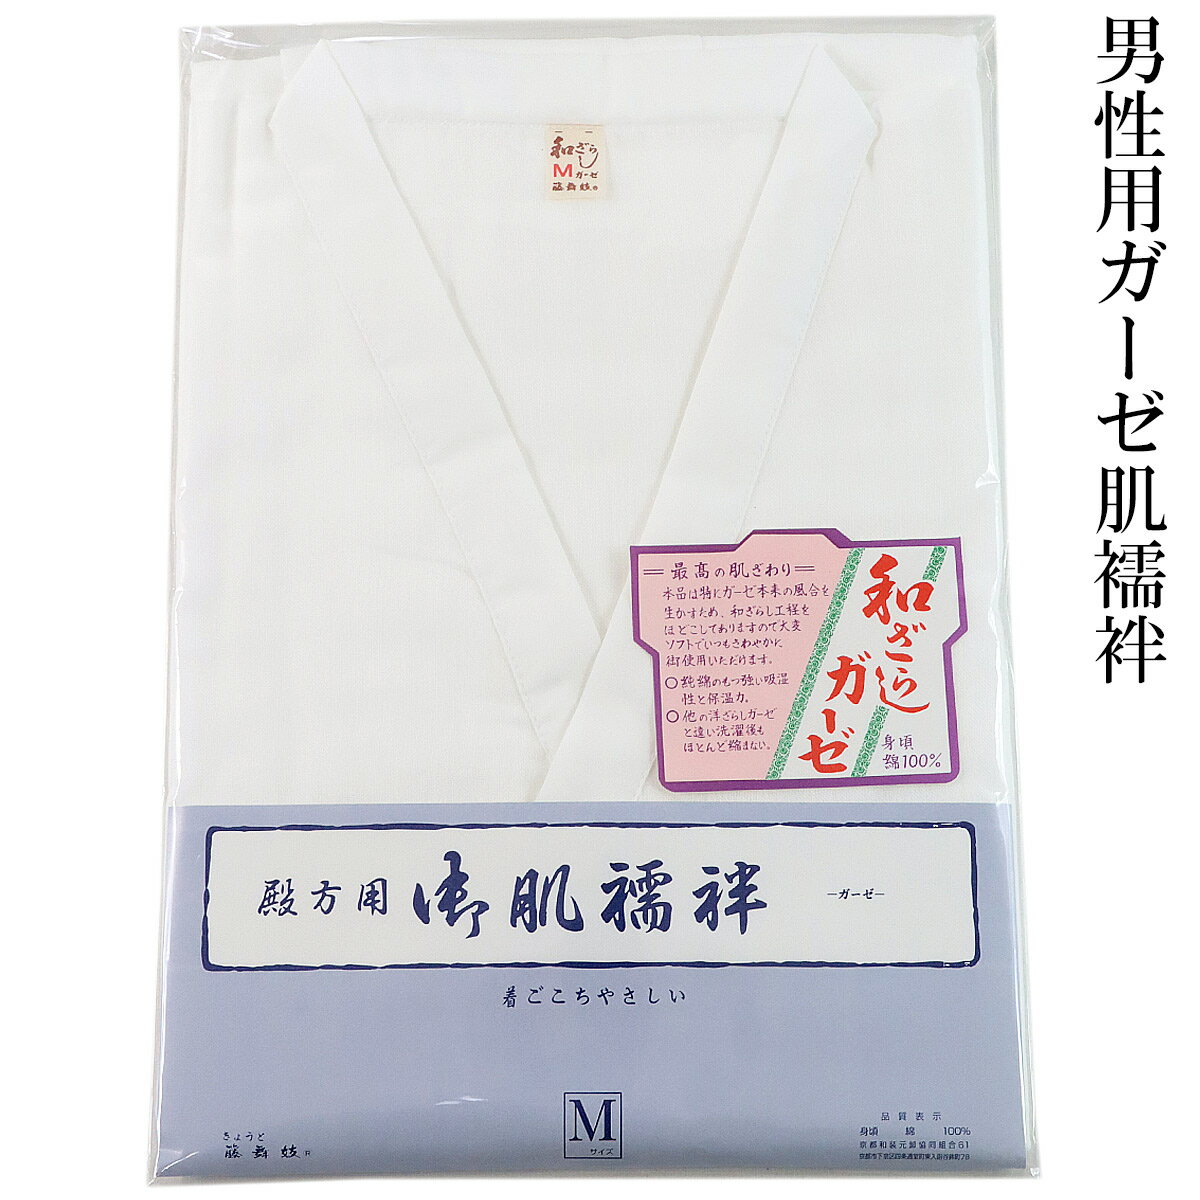 メンズ肌襦袢 男性用 和ざらしガーゼ肌着 M-size 白衿 綿100% 日本製